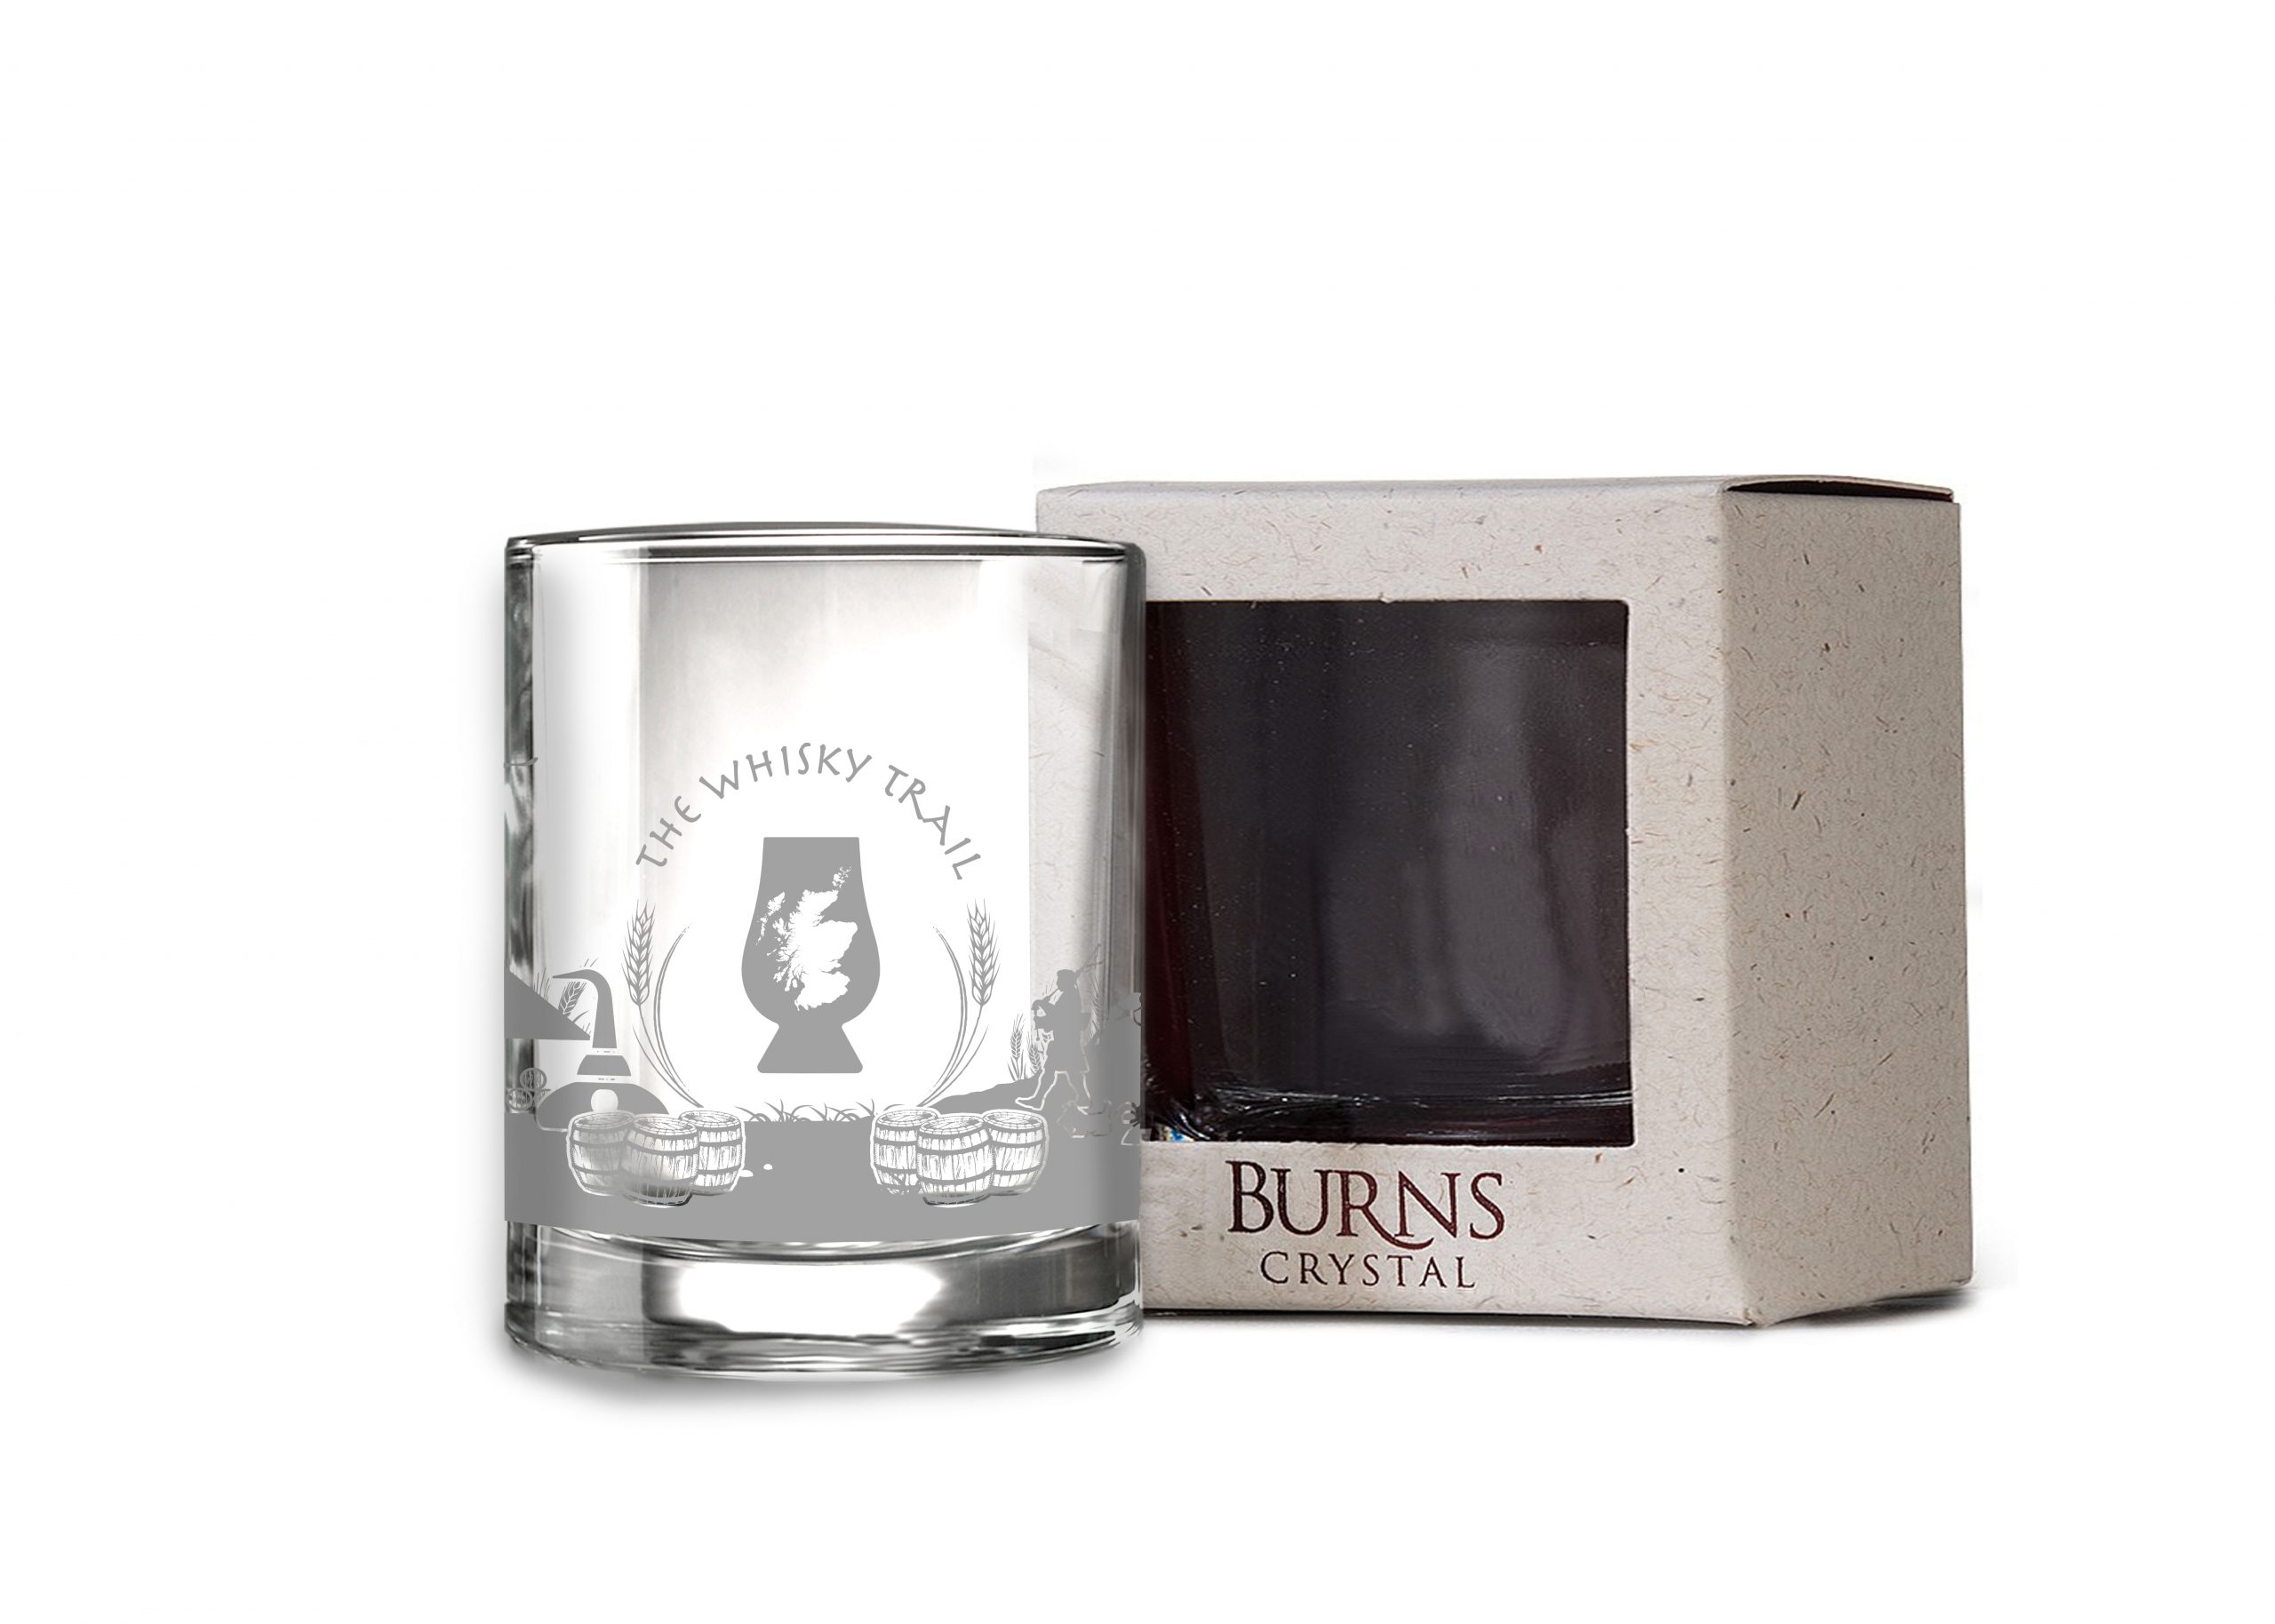 Burns Scottish Gift Skyline Range The Whisky Trail | gifts for whisky lovers uk